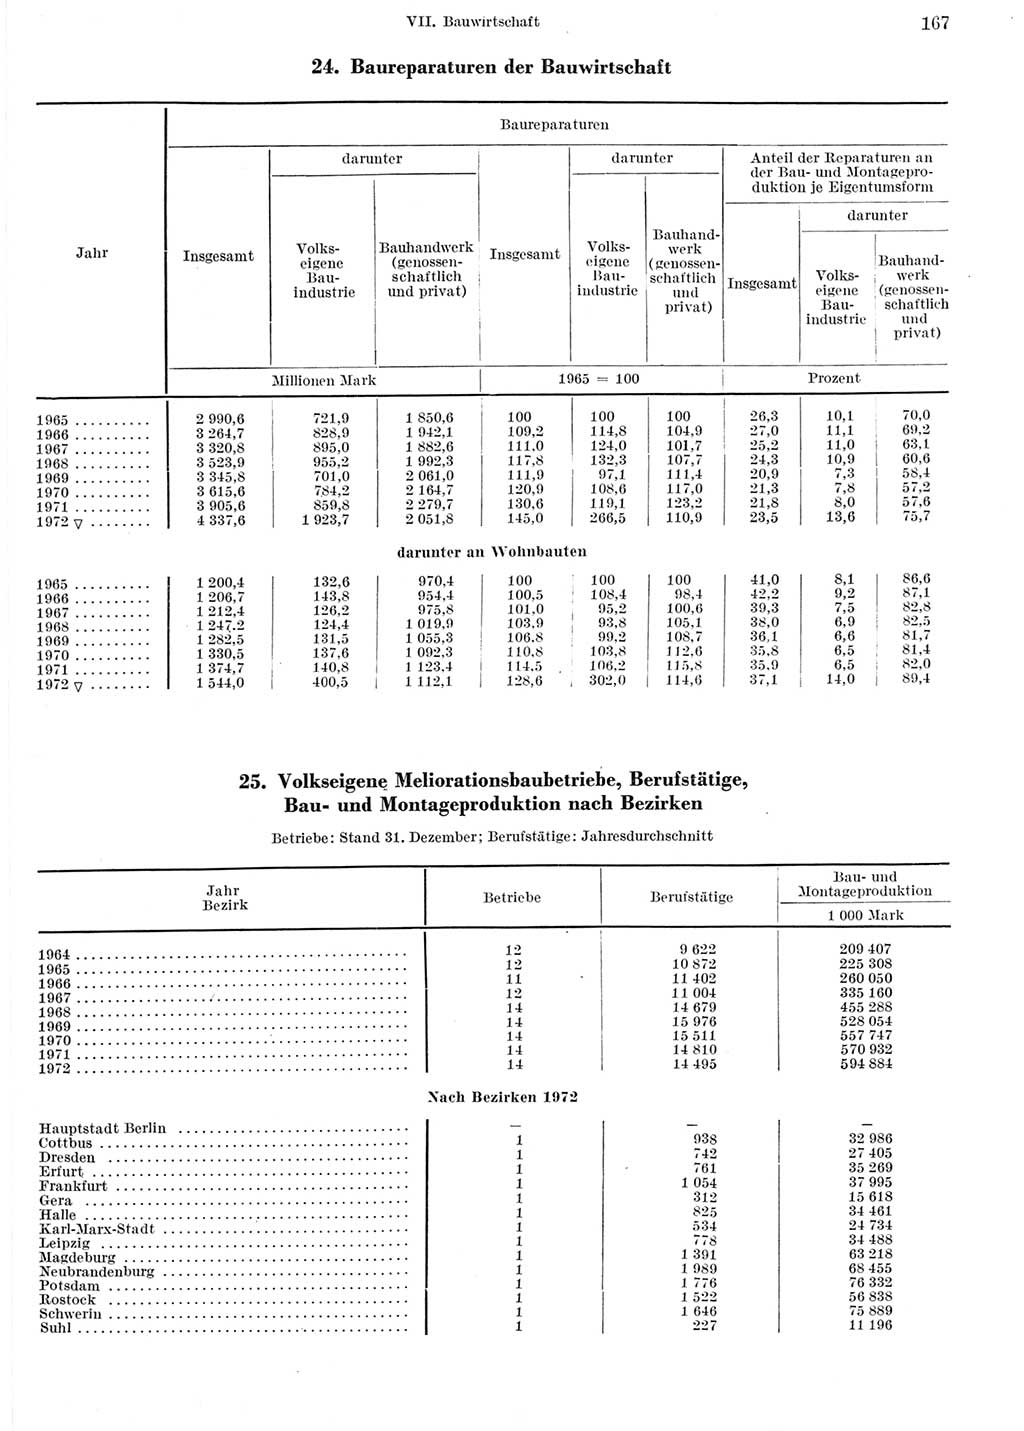 Statistisches Jahrbuch der Deutschen Demokratischen Republik (DDR) 1973, Seite 167 (Stat. Jb. DDR 1973, S. 167)